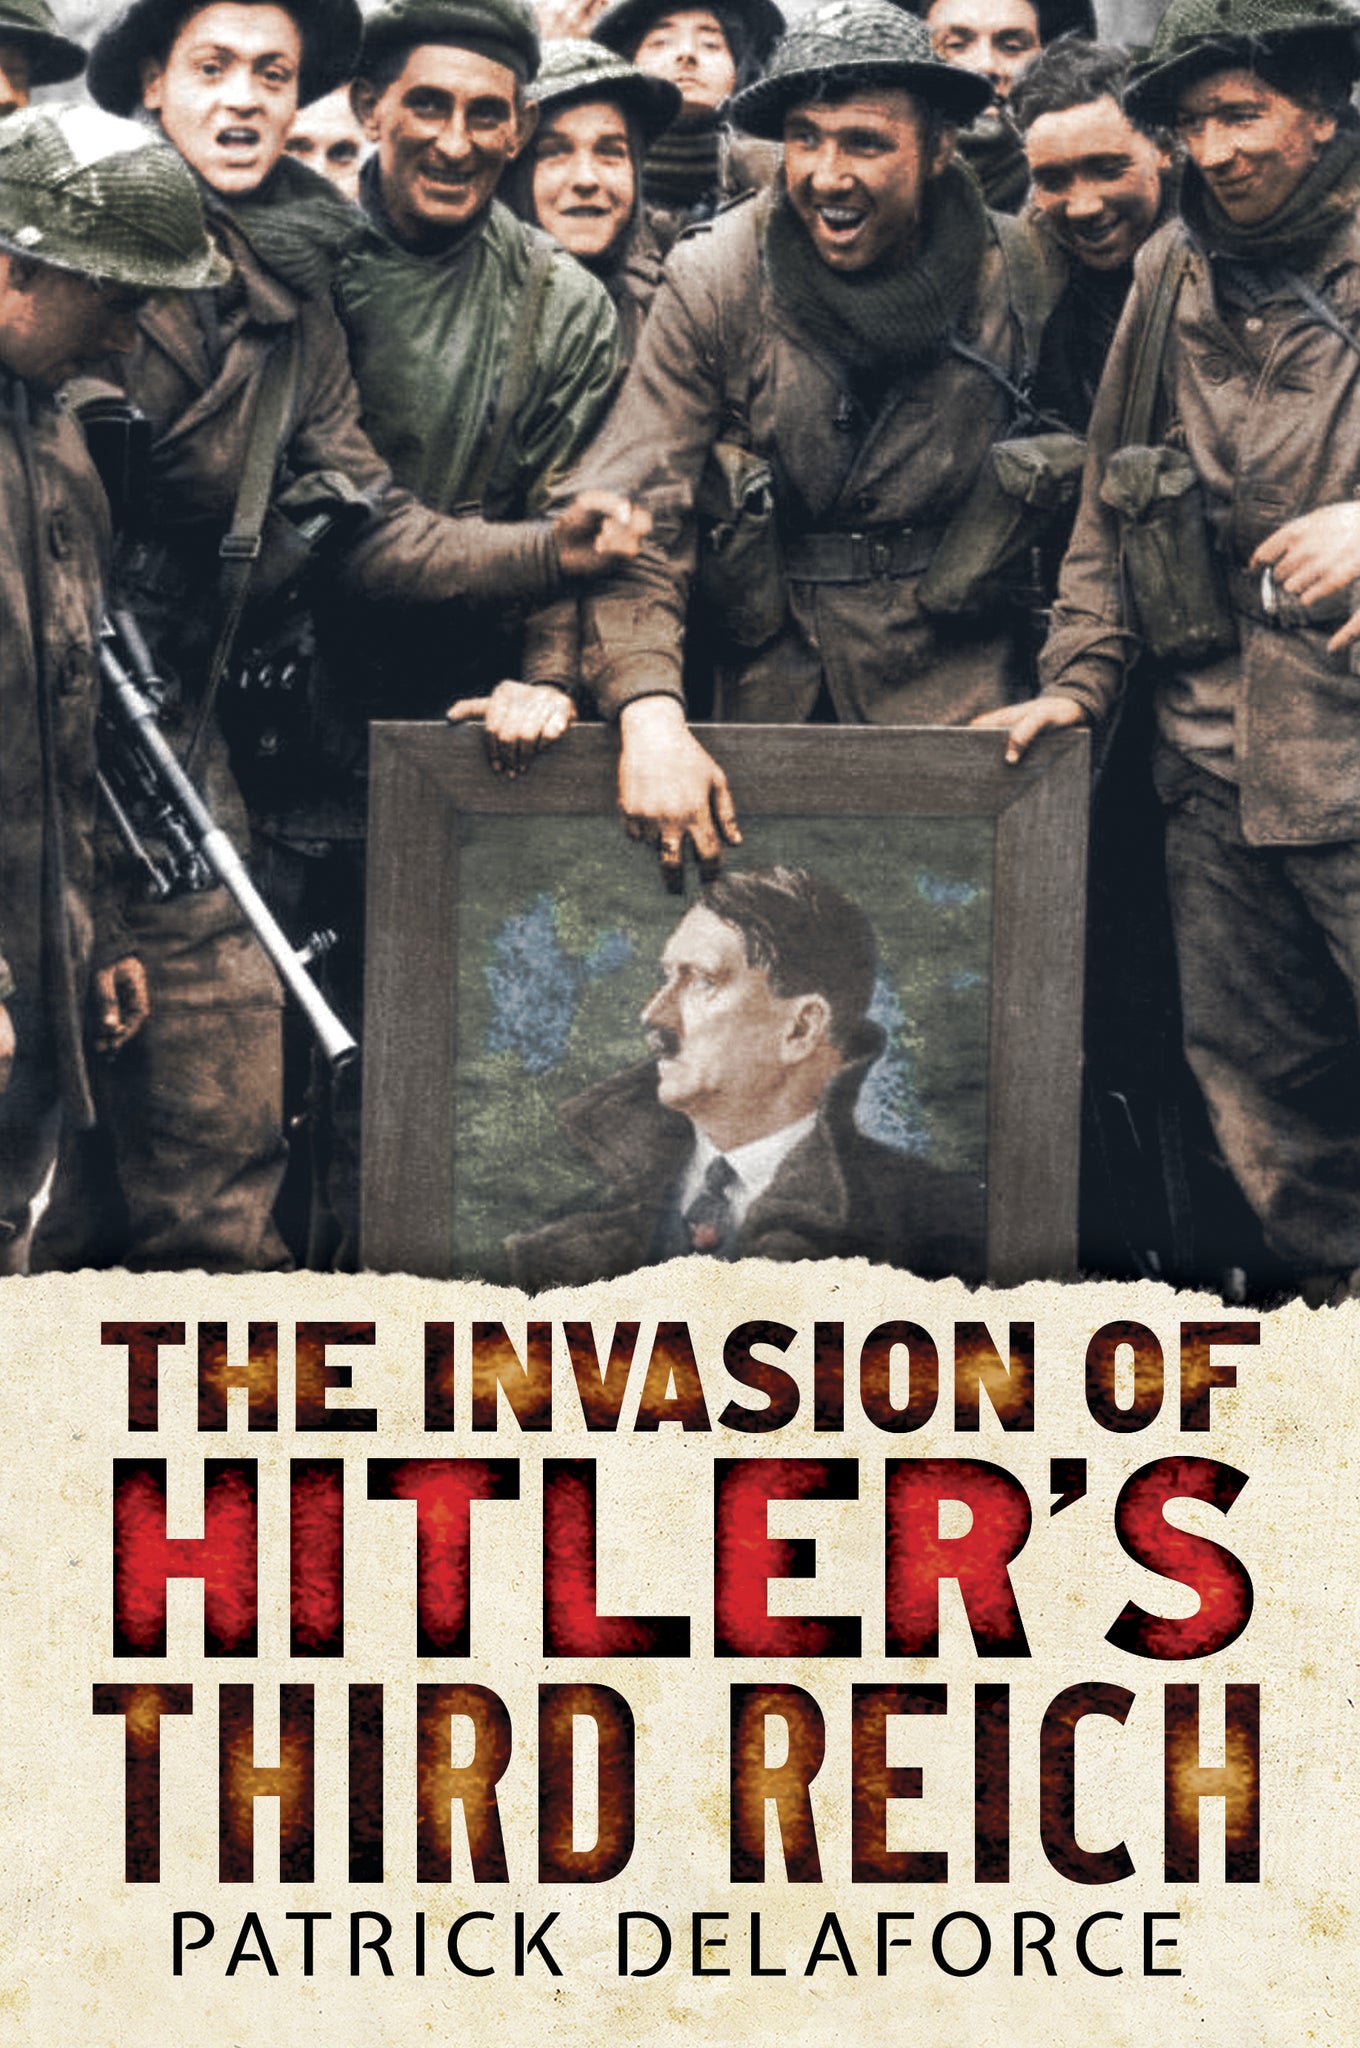 The Invasion of Hitler's Third Reich